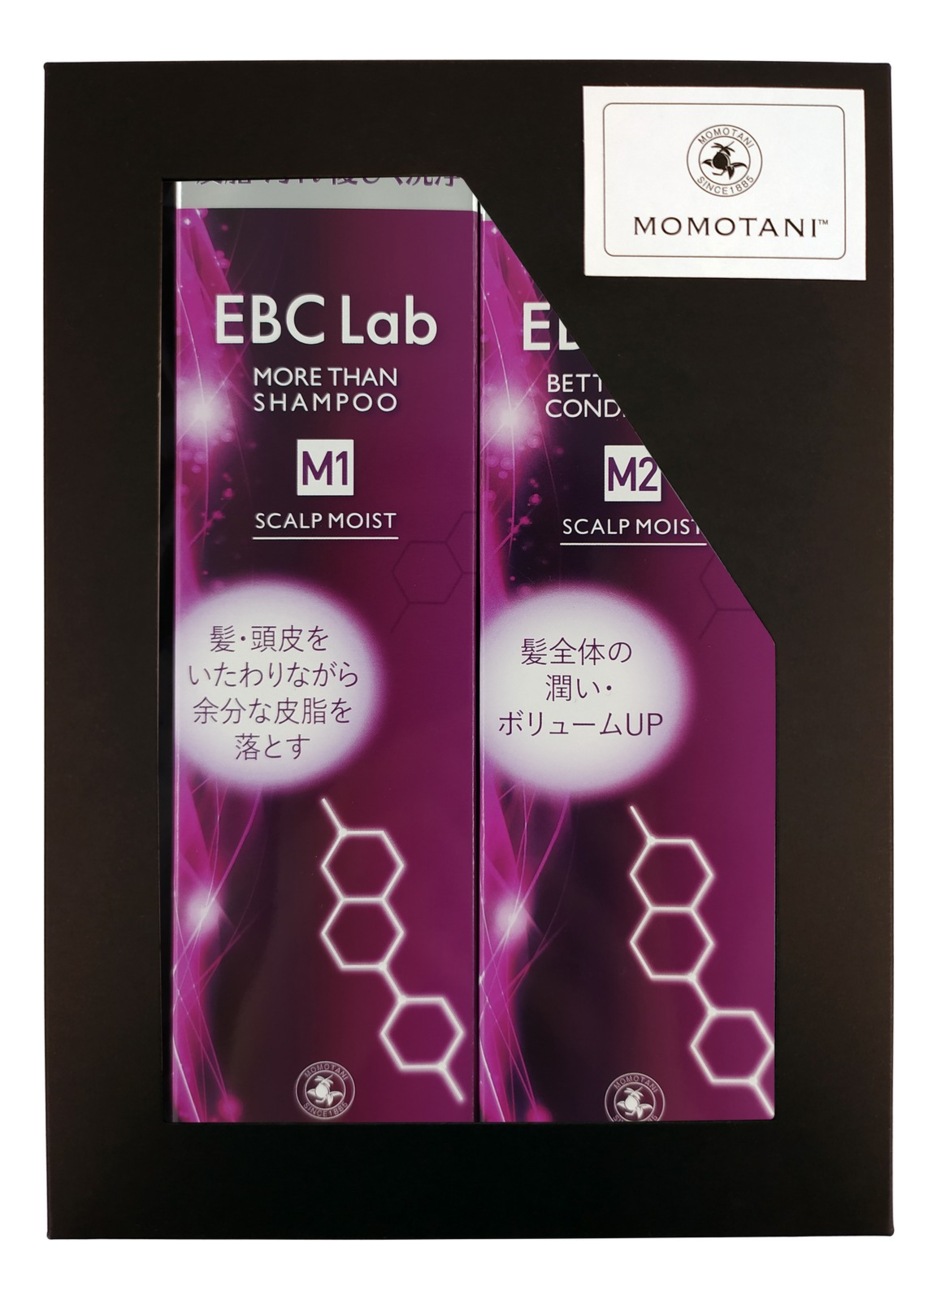 Набор для волос Увлажнение и объем EBC Lab 2*290мл (кондиционер Scalp Moist Conditioner + шампунь Scalp Moist Shampoo) momotani шампунь ebc lab scalp moist more than shampoo 290 мл